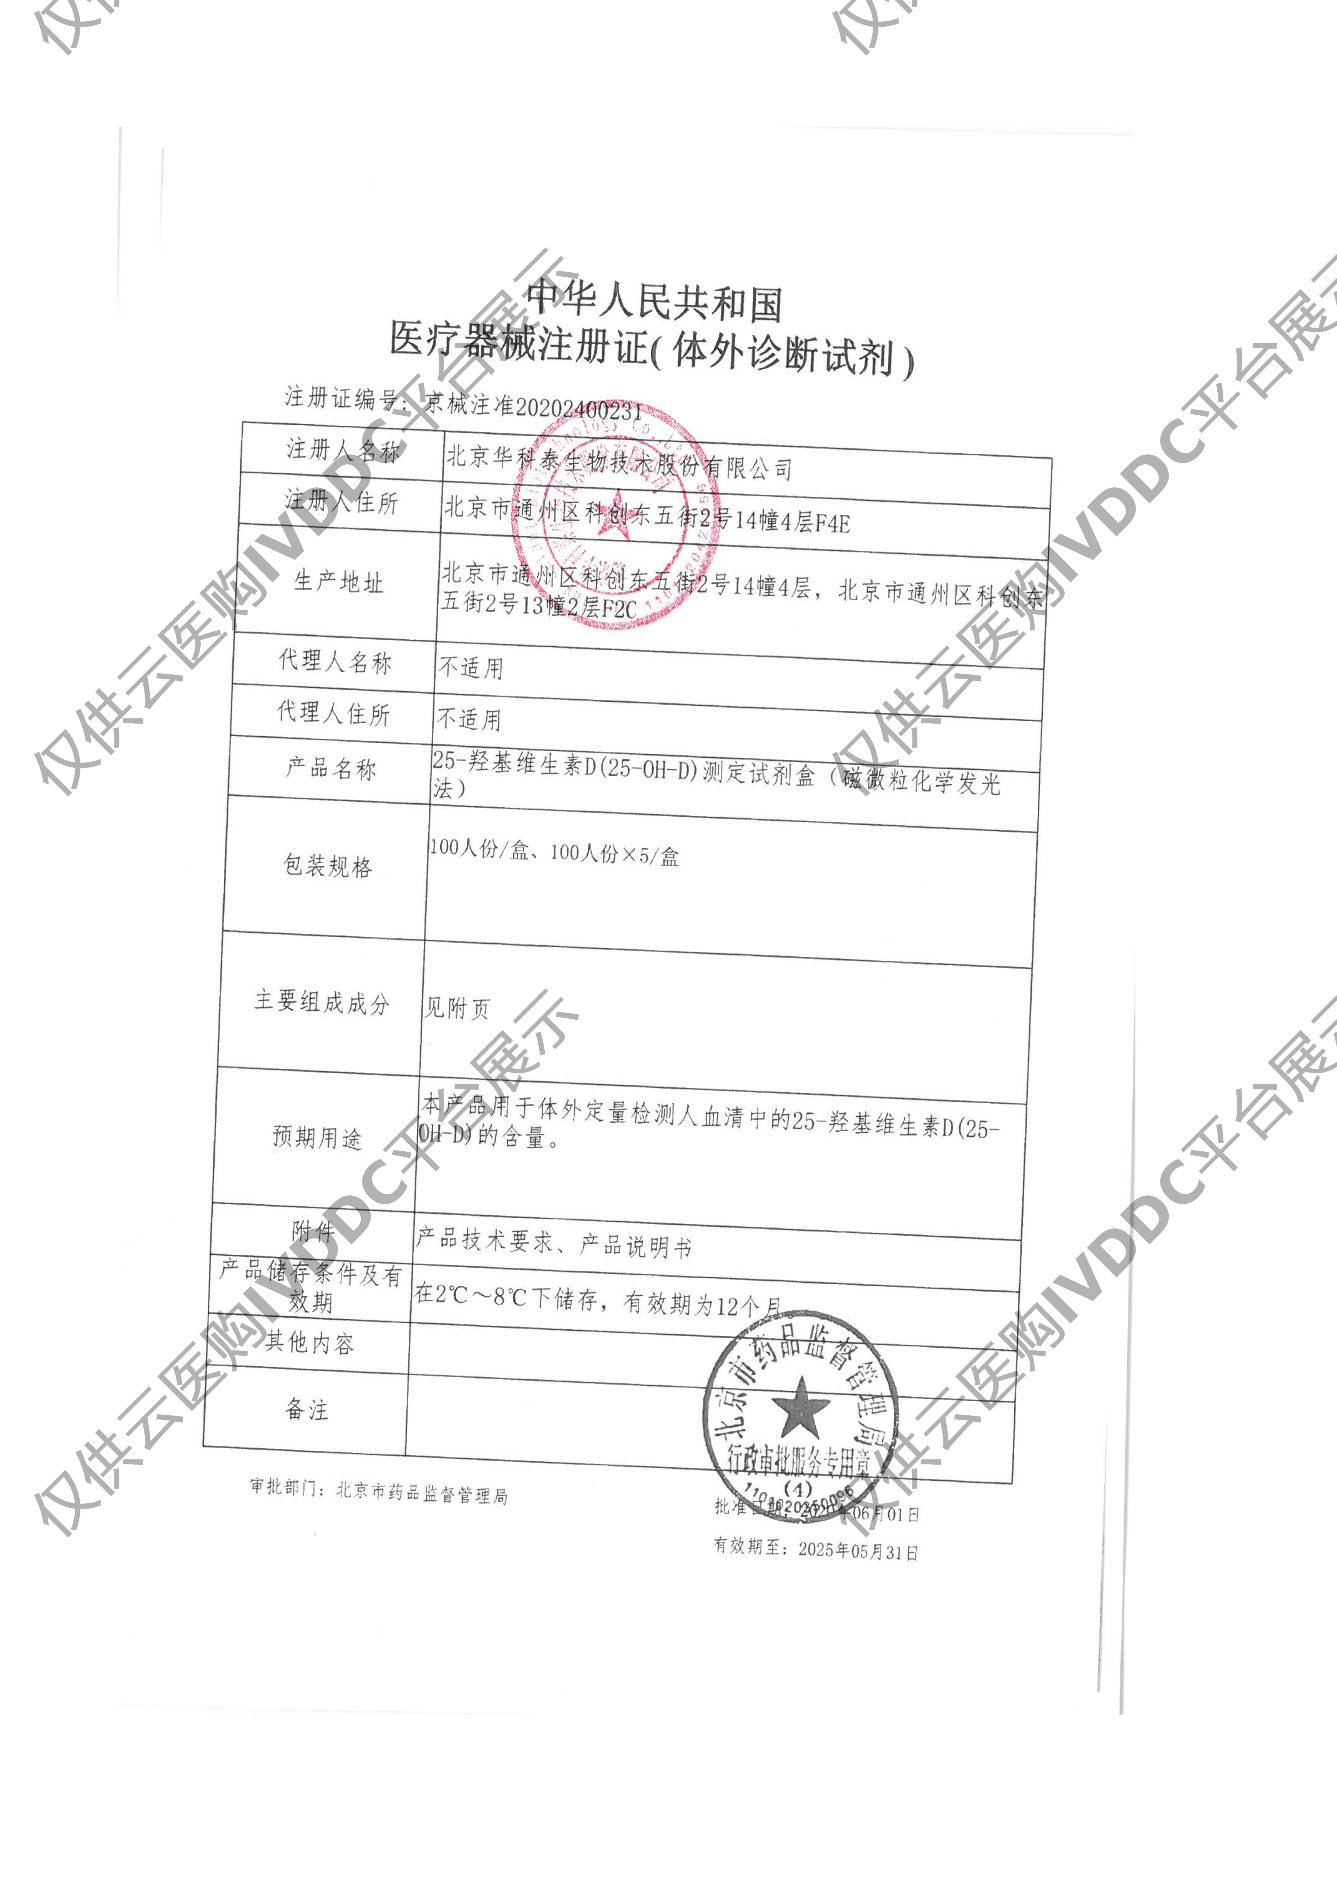 【华科泰】25-羟基维生素D（25-OH-D）测定试剂盒（磁微粒化学发光法）注册证